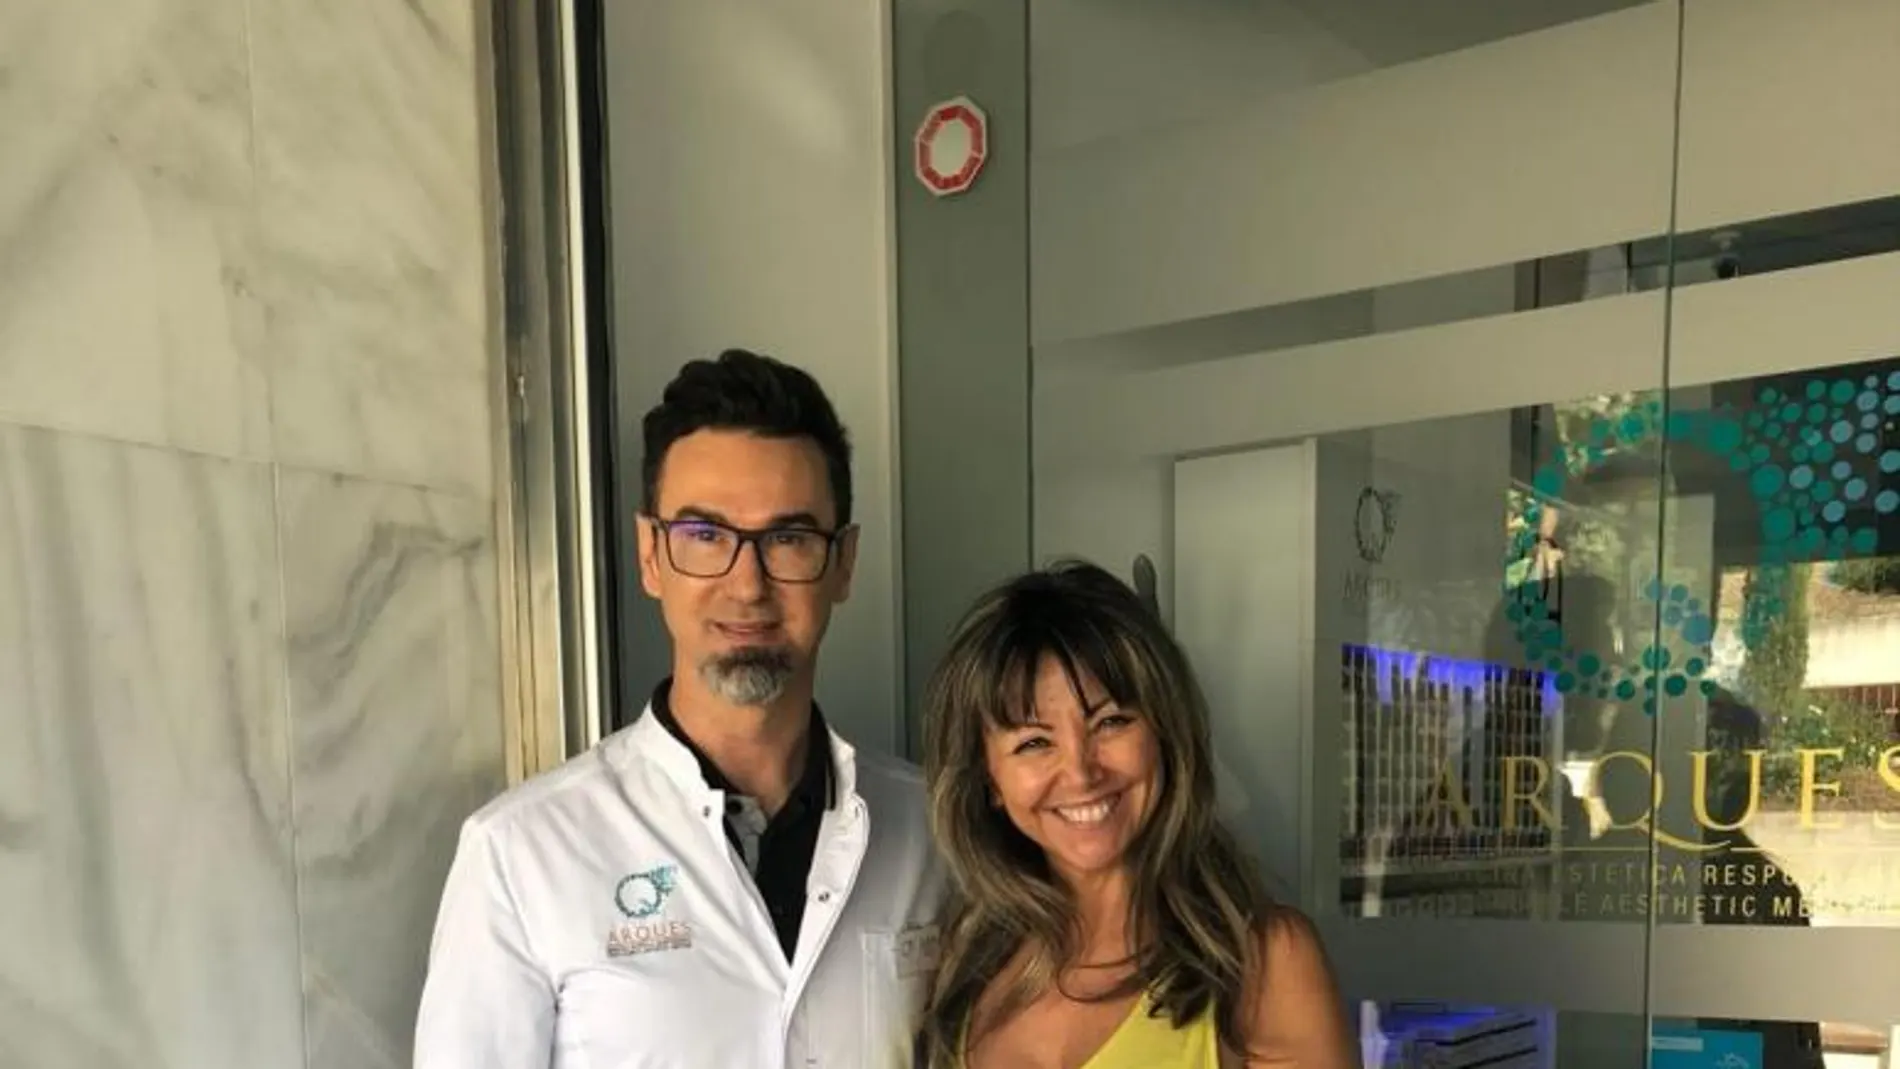 En Marbella, la clínica Arques inició una campaña denominada Por tú sonrisa, una iniciativa que ofrece tratamientos estéticos gratuitos a mujeres que han logrado vencer el cáncer. Foto: Clínica Arques.